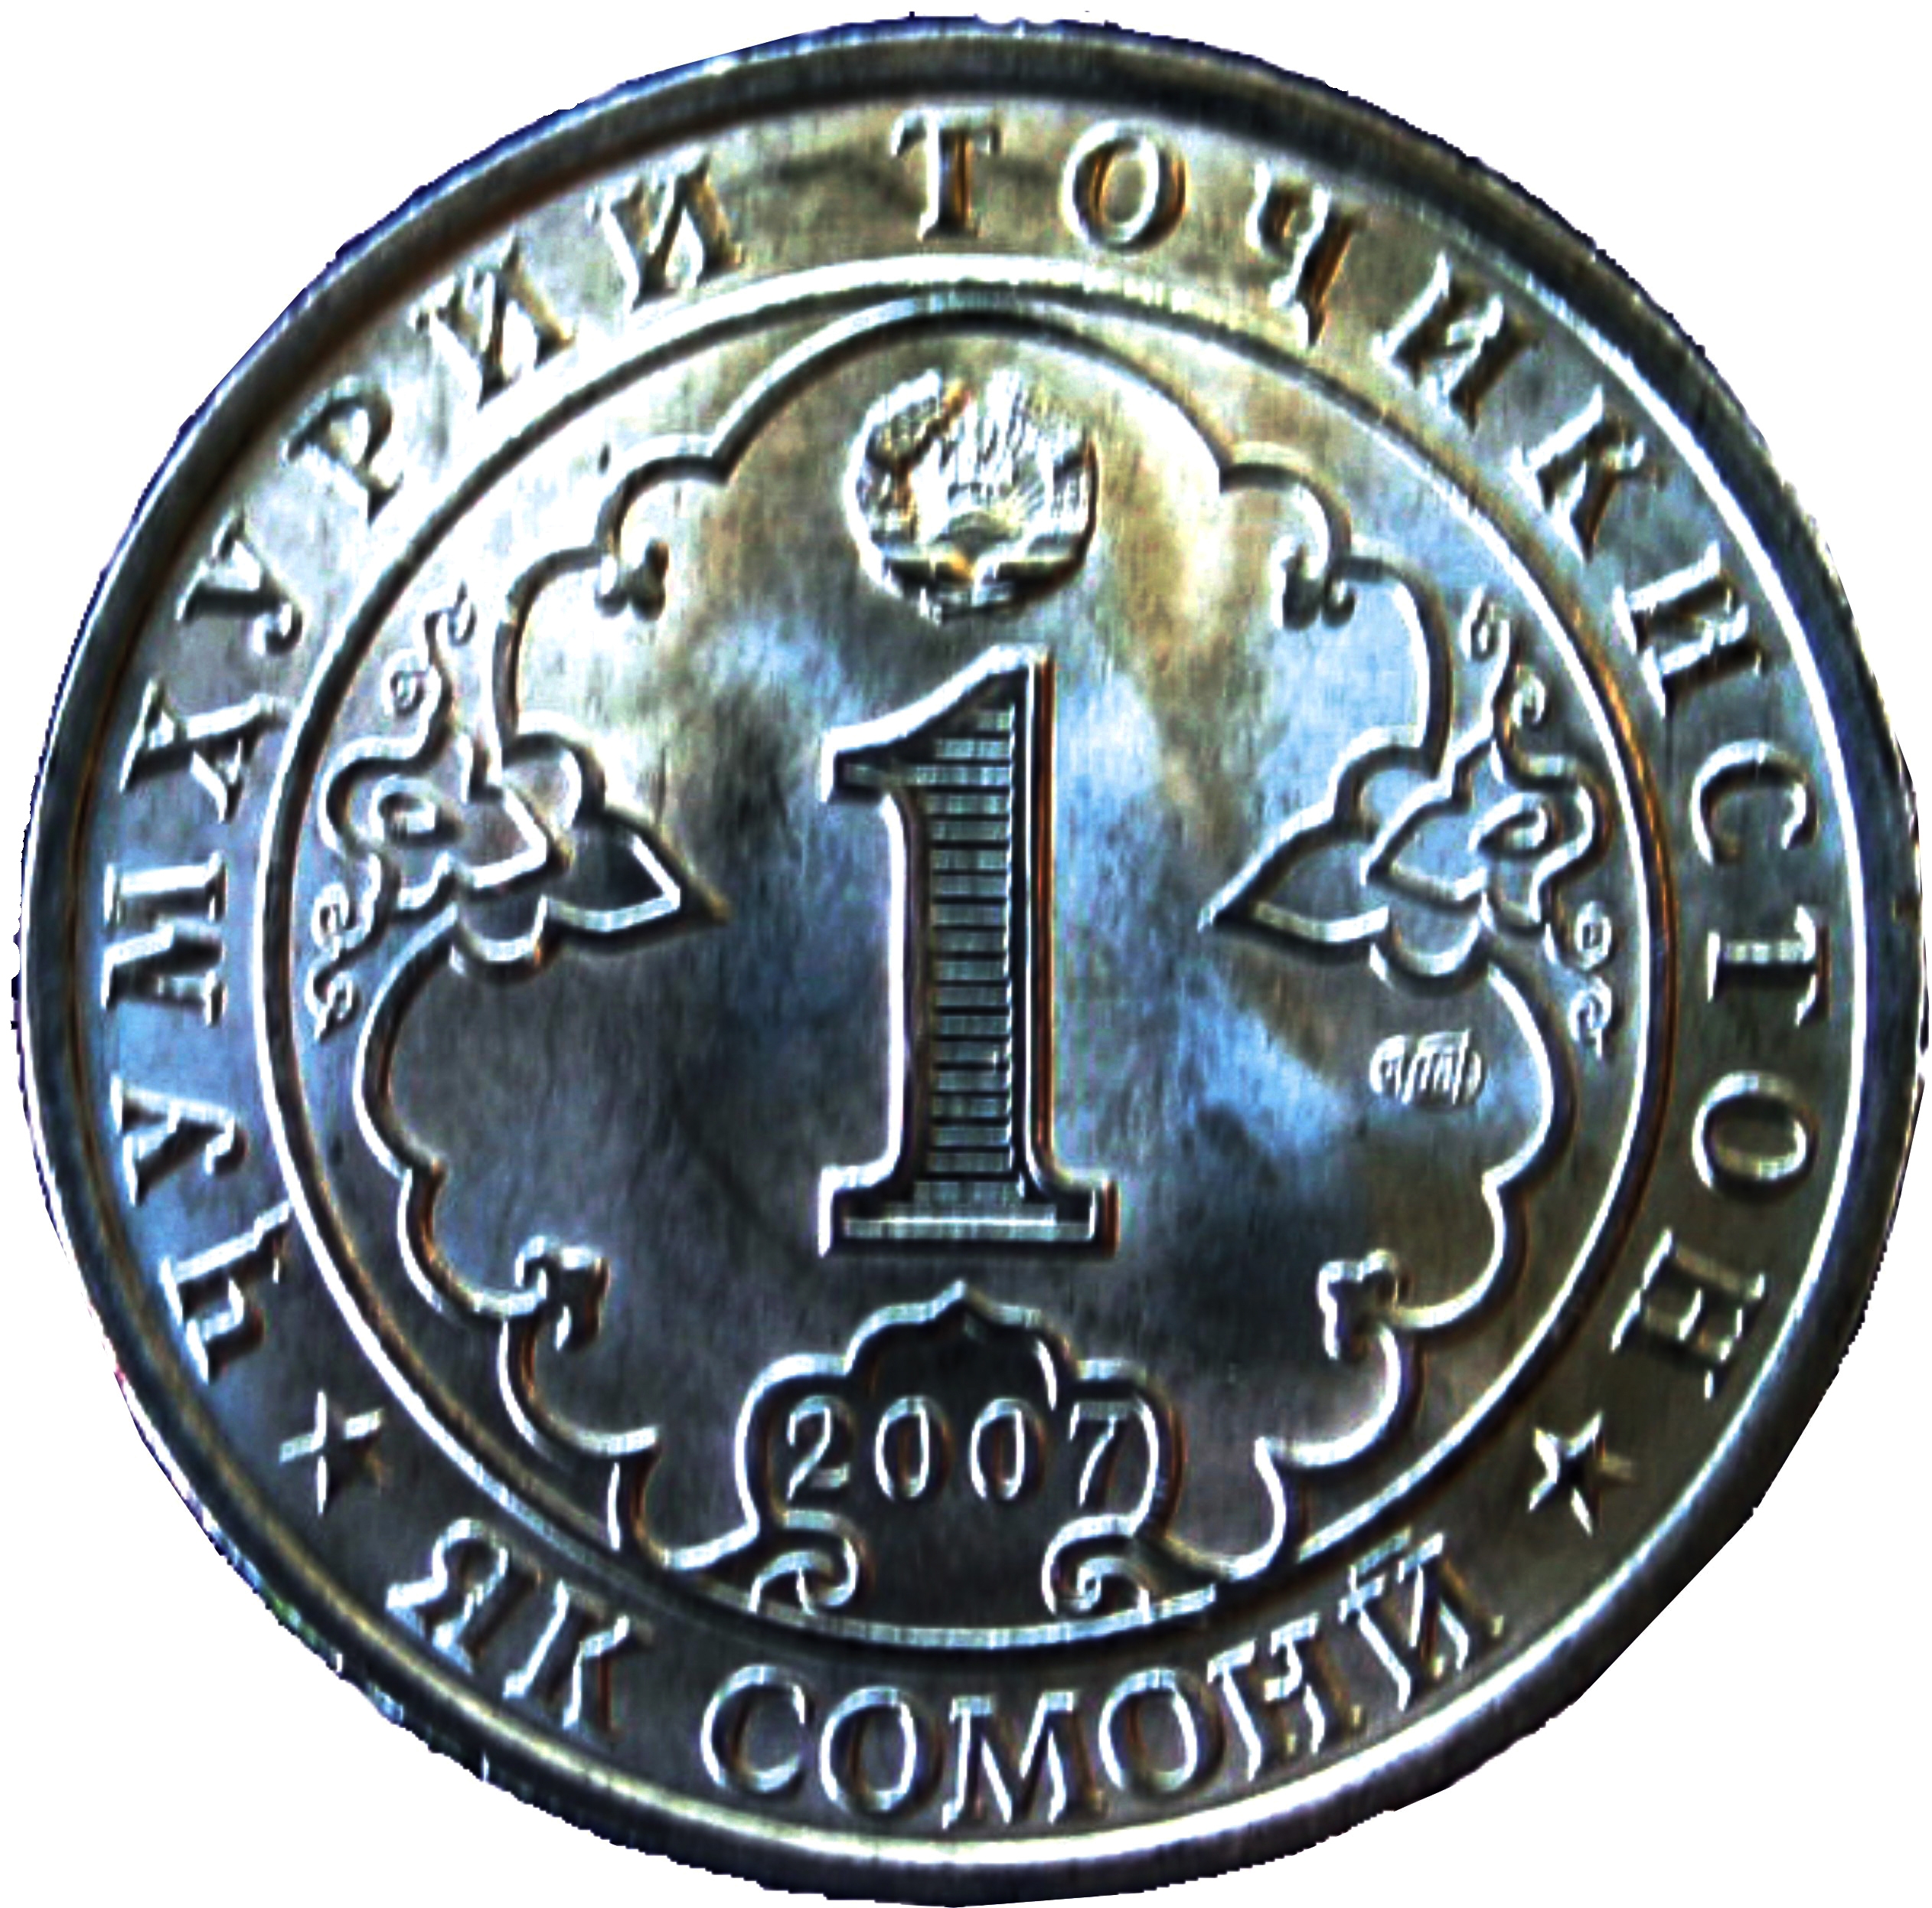 800 сум. Сомони монеты. Таджикские монеты. Юбилейные монеты Таджикистана. Таджикские юбилейные монеты.